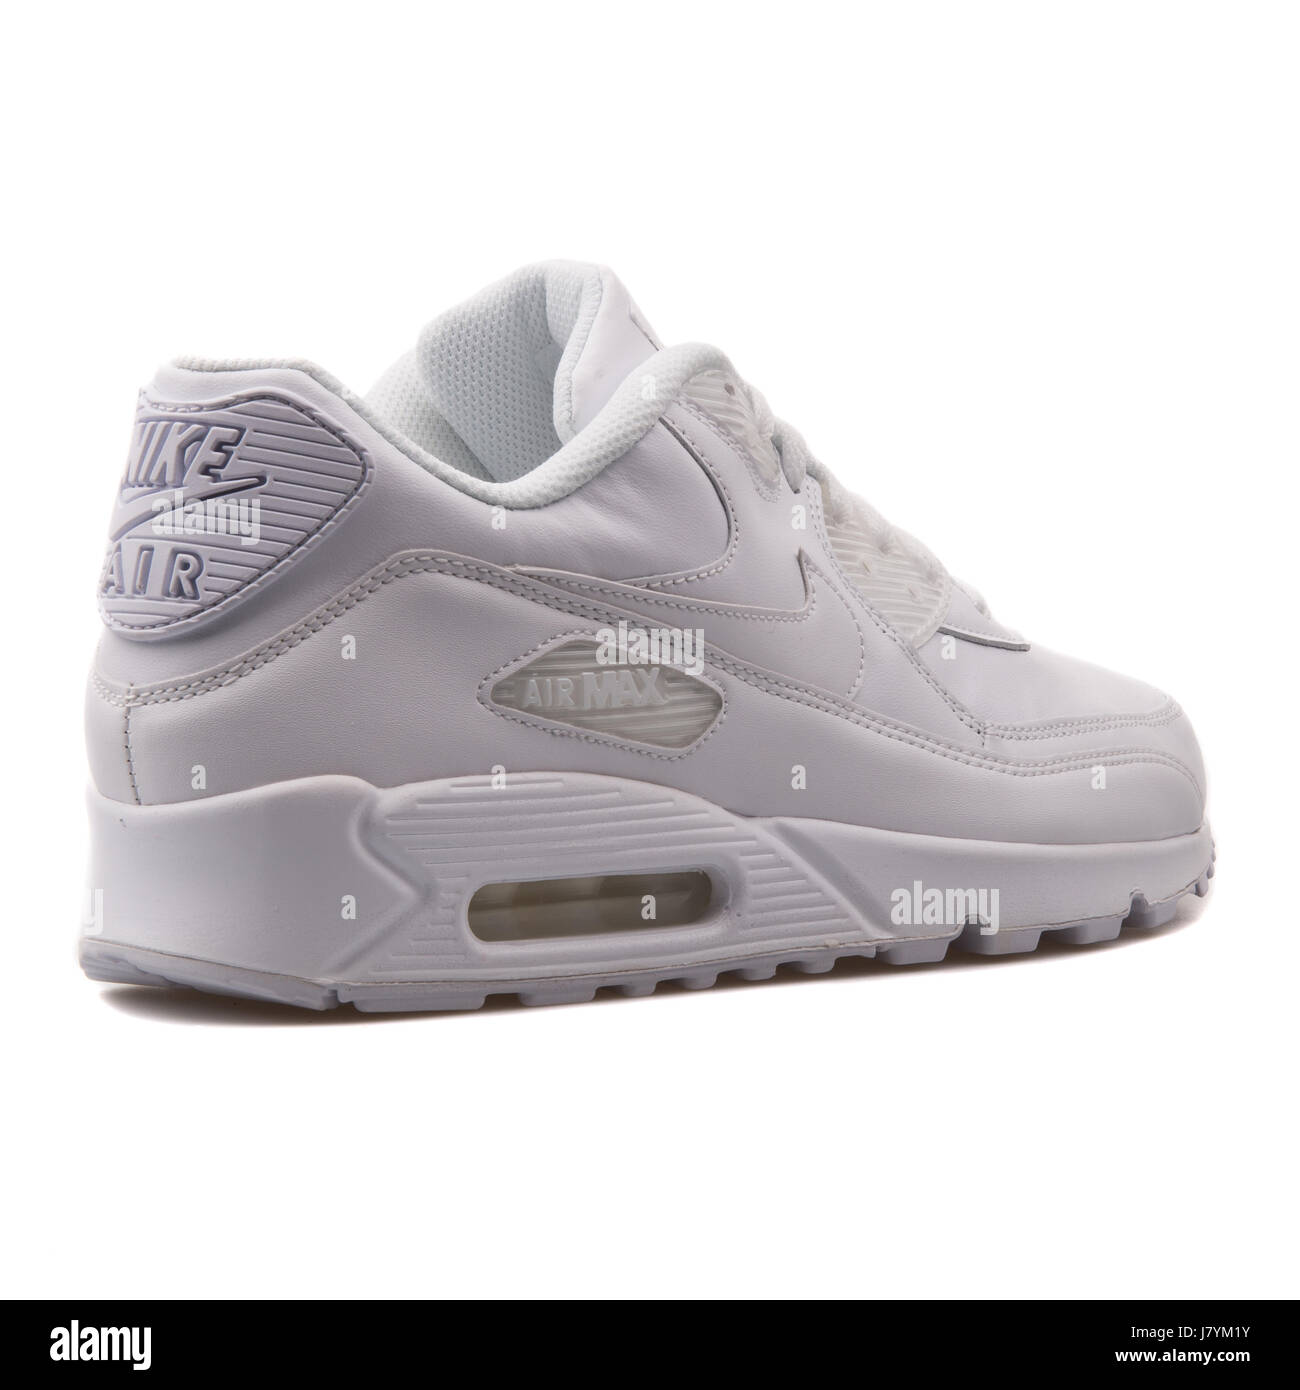 Nike Air Max 90 hombres blancos de de cuero de zapatillas deportivas - 302519-113 Fotografía stock - Alamy